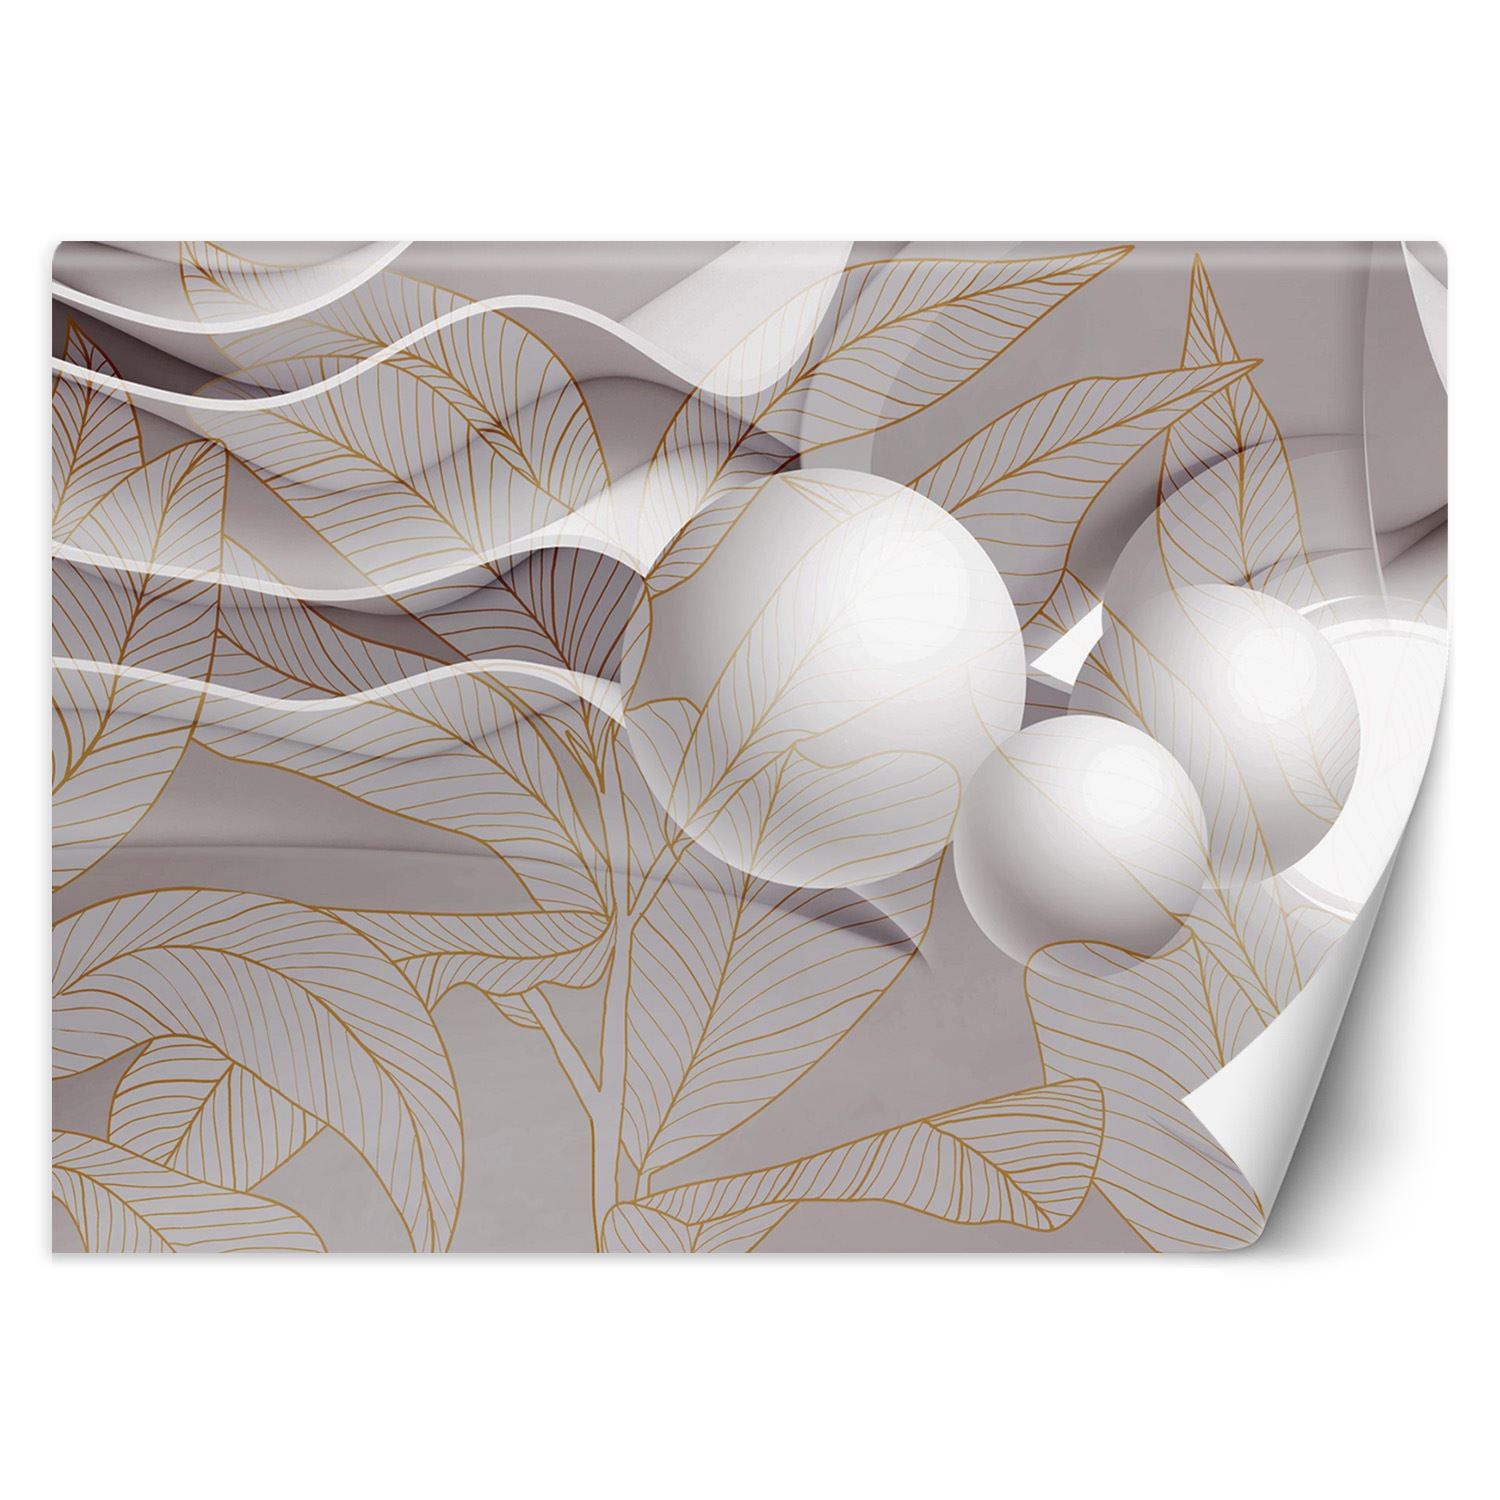 Trend24 – Behang – Goudbladeren En Ballen 3D – Vliesbehang – Fotobehang 3D – Behang Woonkamer – 450x315x2 cm – Incl. behanglijm